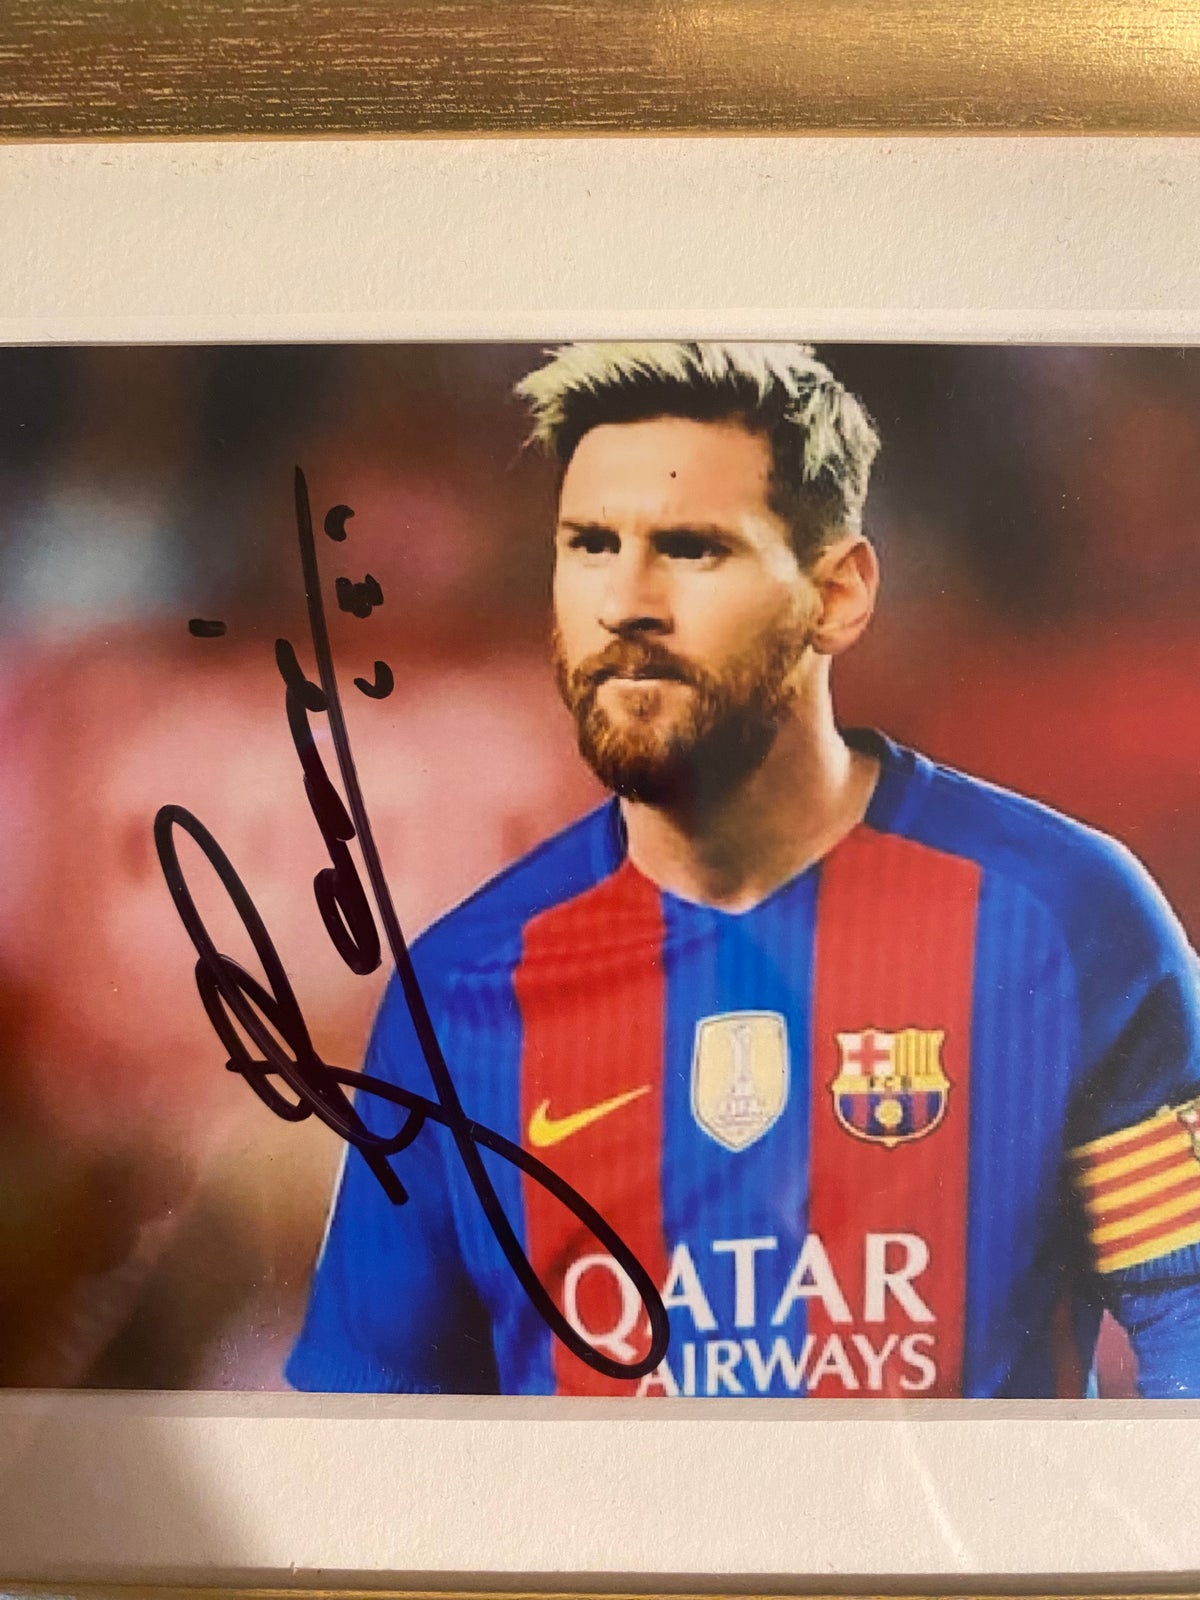 Fodboldtrøje, Autografer af Lionel Messi, Pelé og Henry